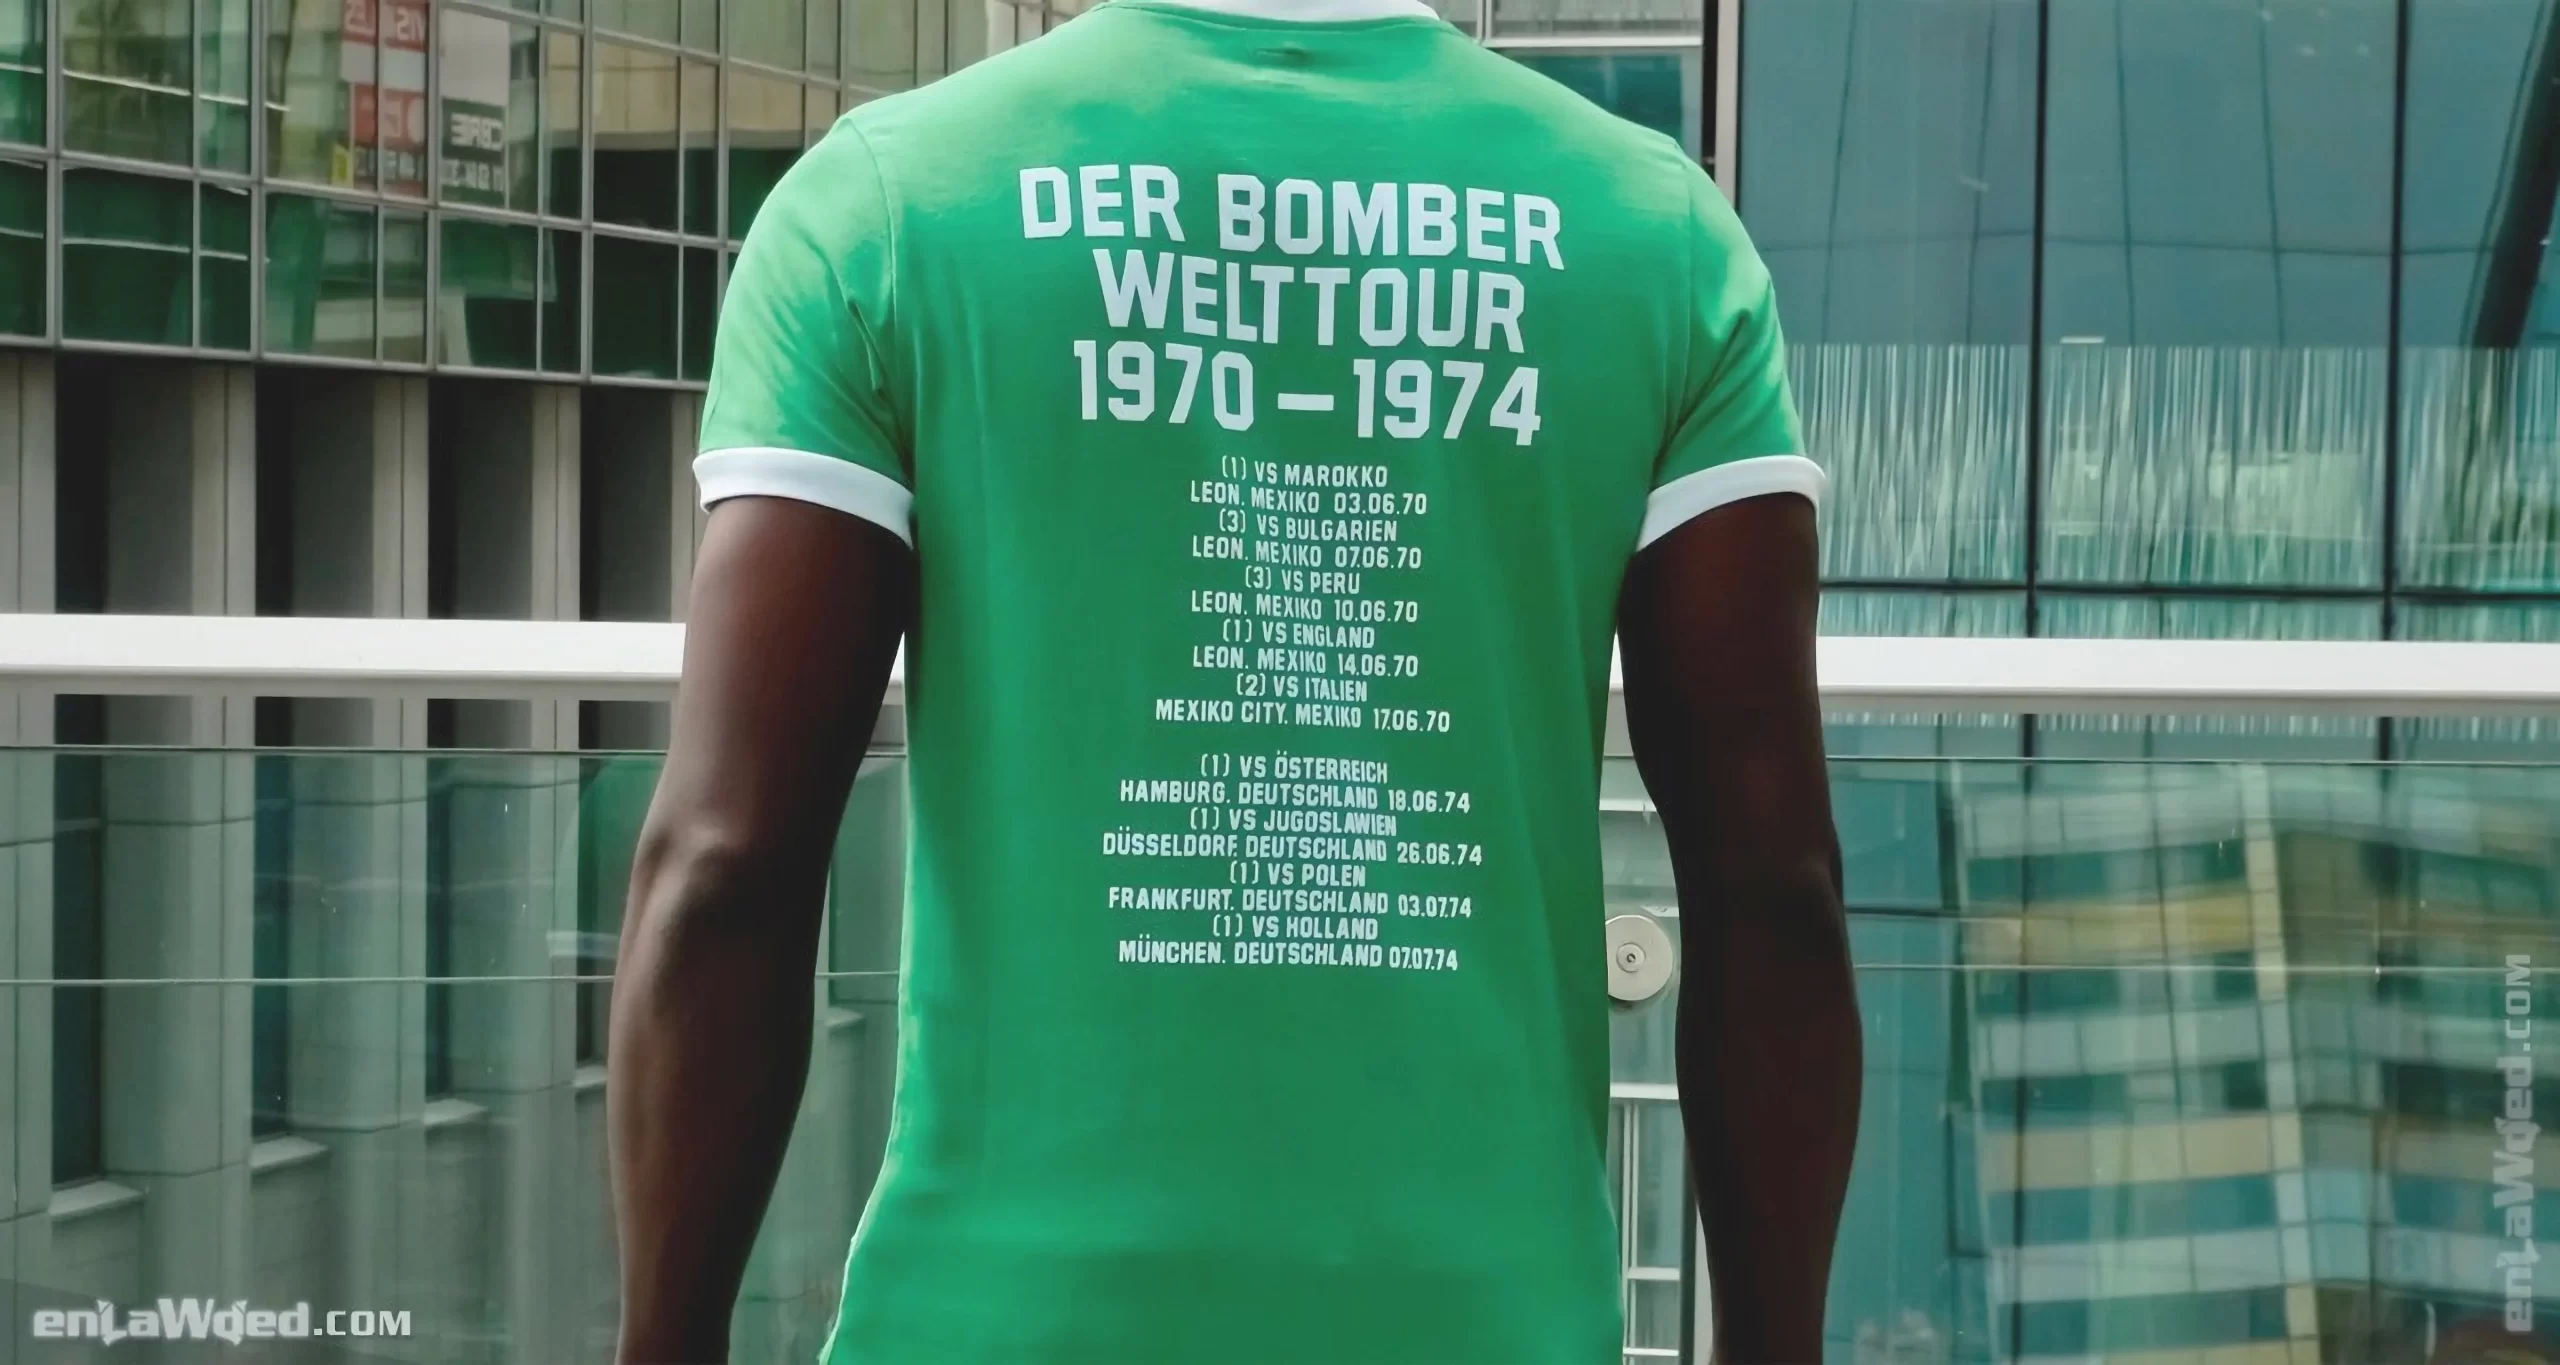 Men’s 2006 Der Bomber ’70 T-shirt by Adidas Originals: Energetic (EnLawded.com file #lmc51gwnnz6jggbeitn)